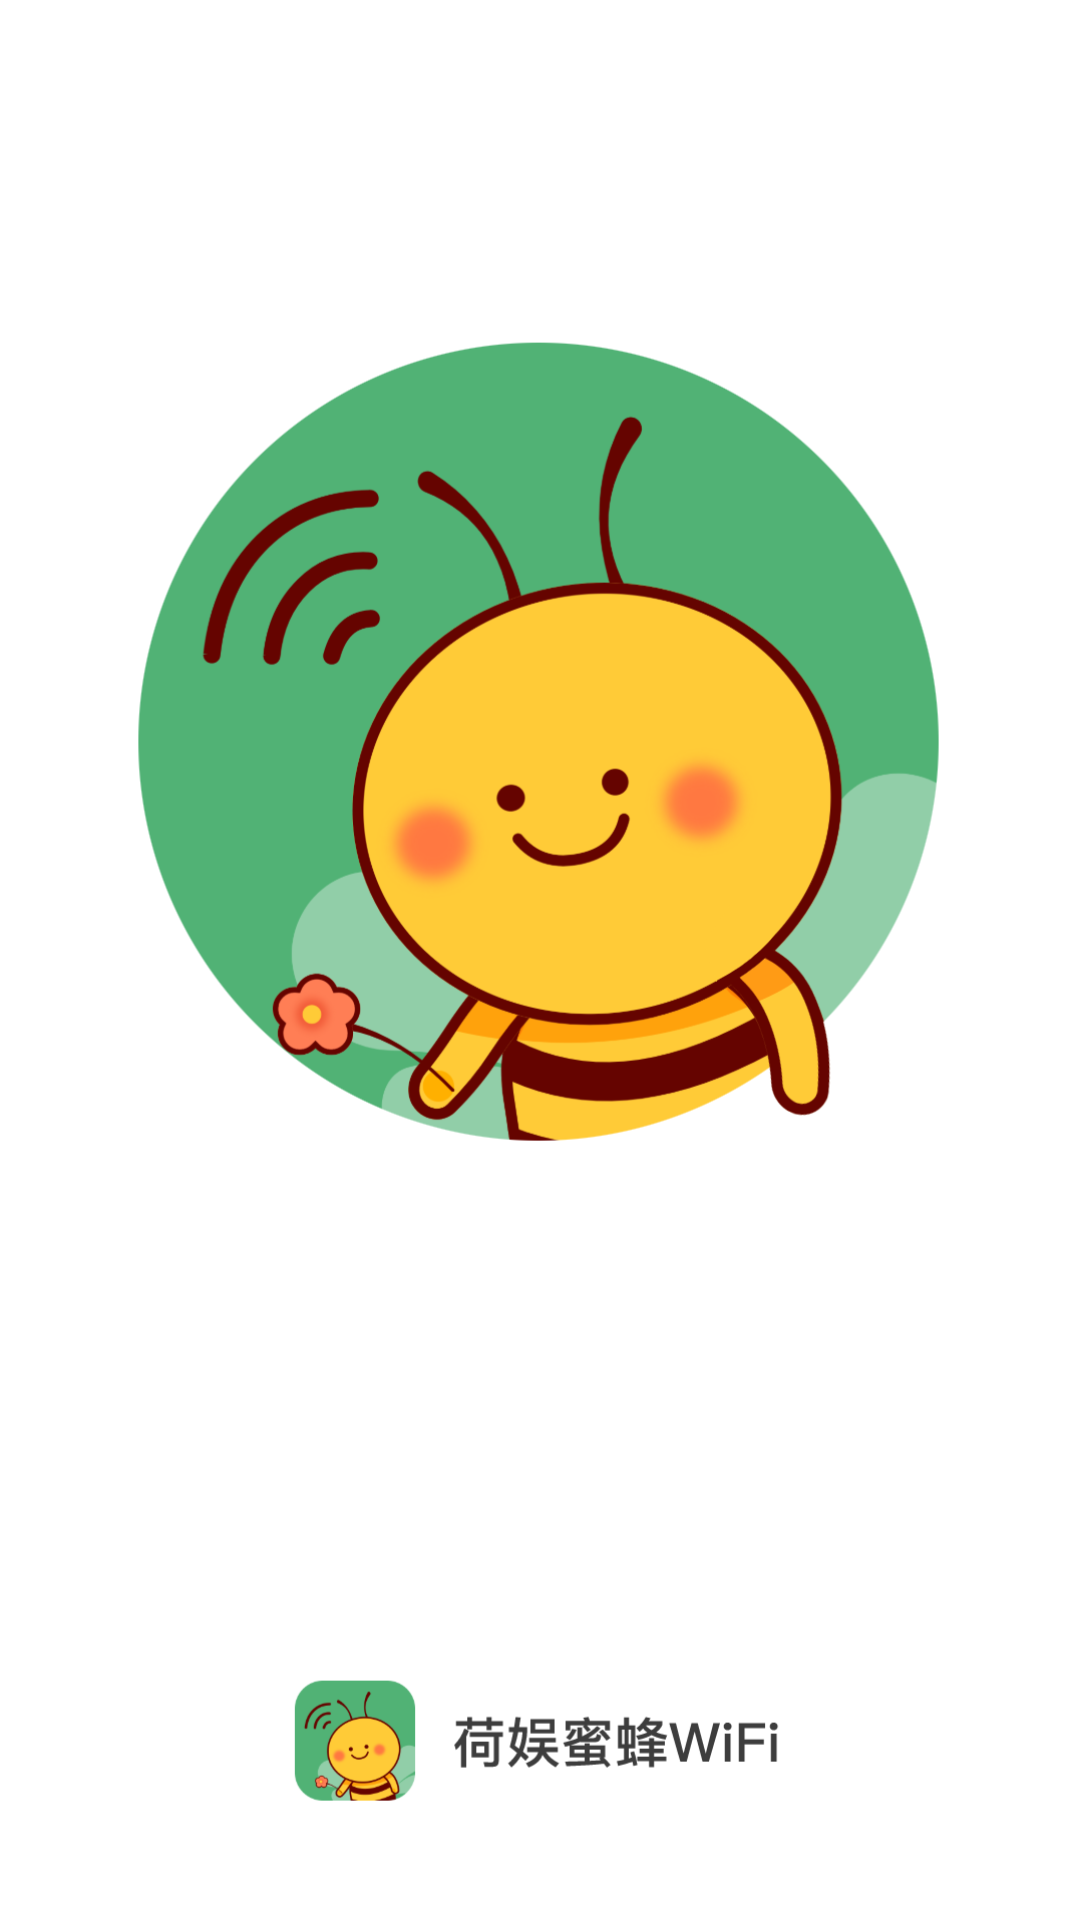 荷娱蜜(蜂)WiFi